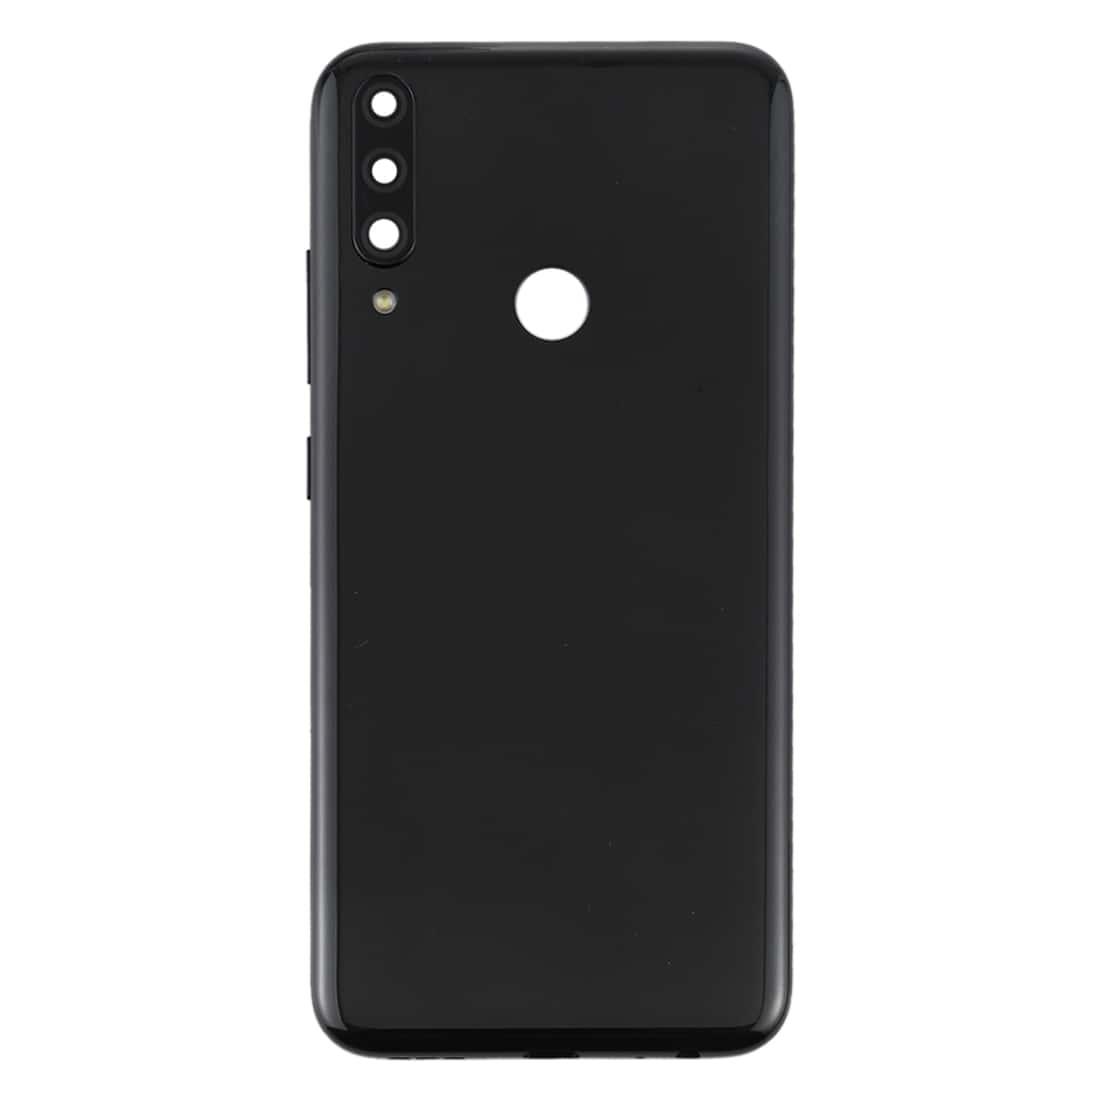 Back Panel Housing Body for Lenovo K10 Plus Black with Camera Lens